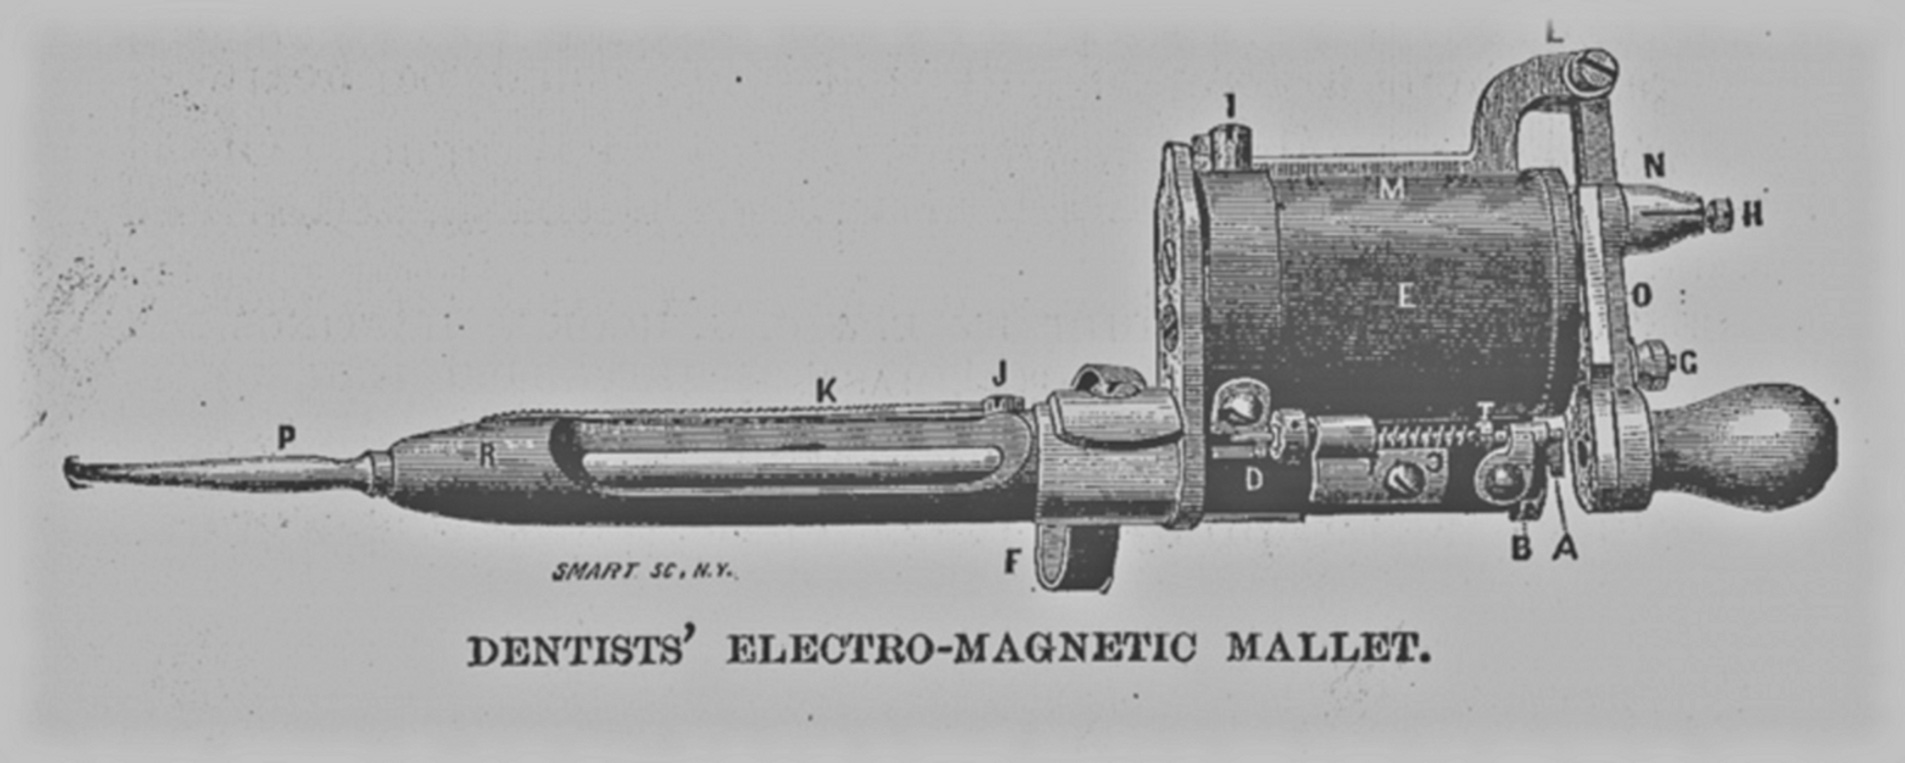 Dentist's Electromagnetic mallet. The Centennial Exposition. Ingram, J.S. Hubbard Bros., 1876. pg. 300. Print.